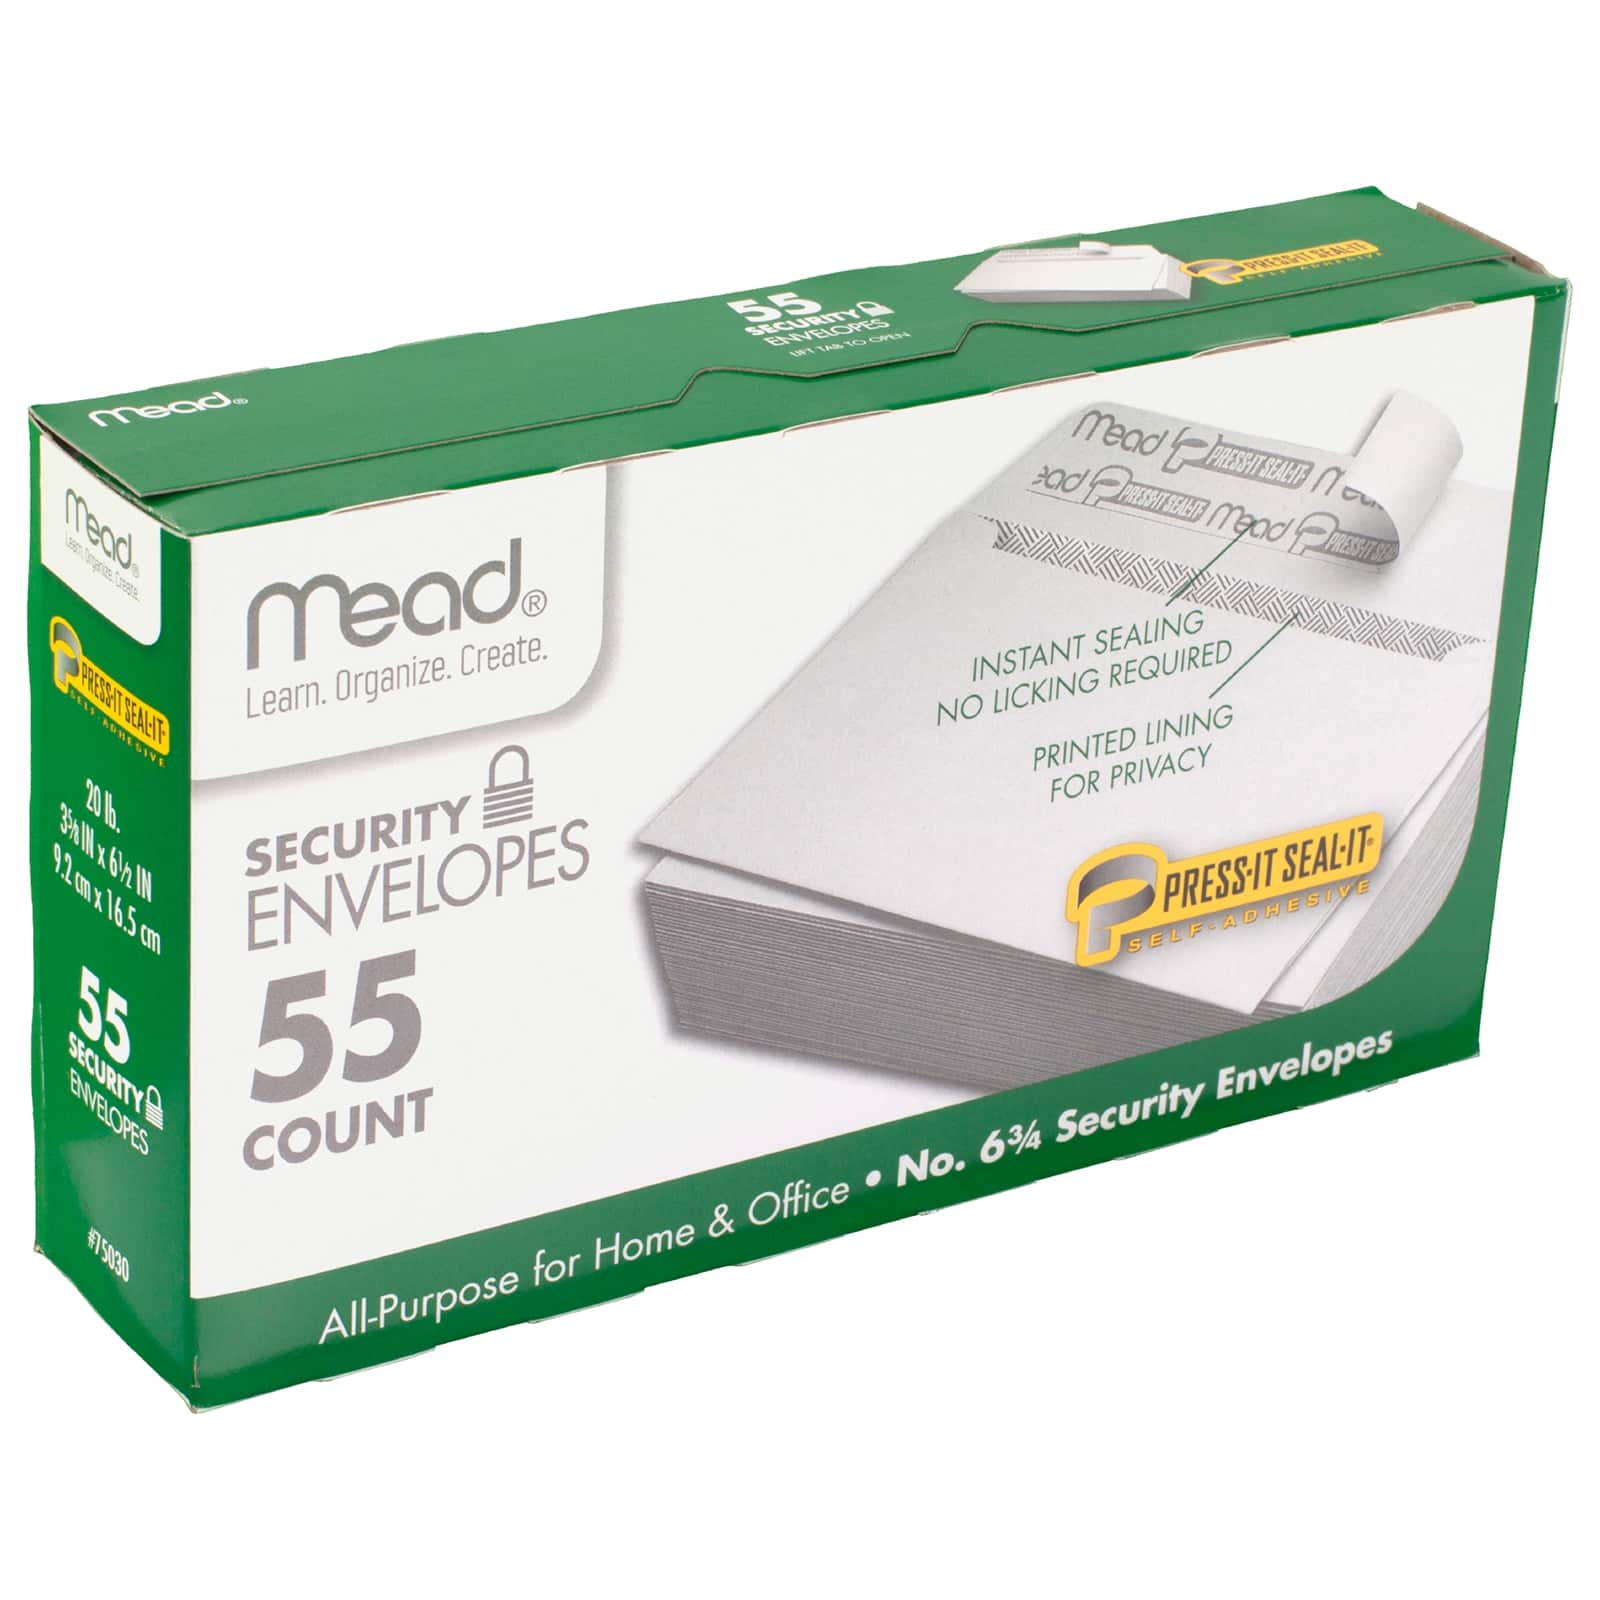 Mead&#xAE; Press-It Seal-It&#xAE; #6 3/4 Security Envelopes, 12 Packs of 55